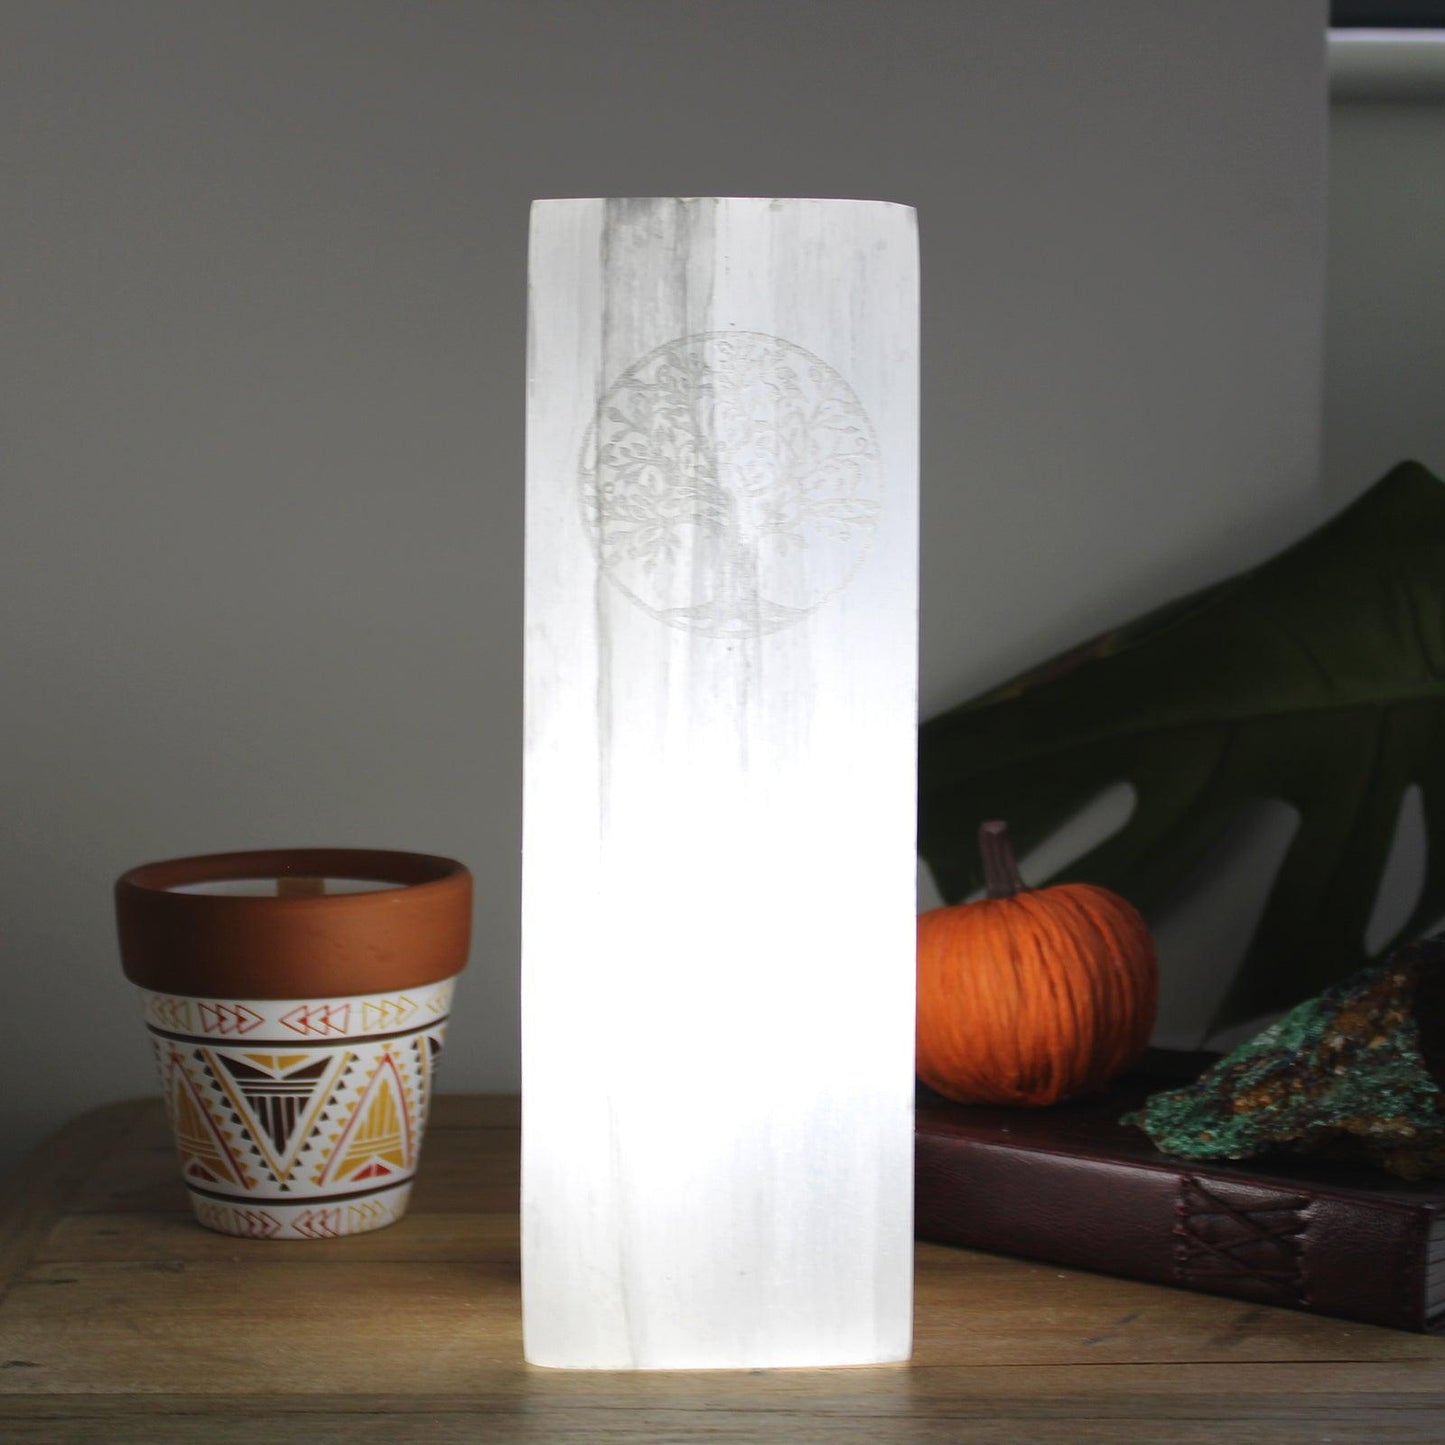 Natural Selenite Healing Crystal Light - Tree of Life Tower Block Lamp 25cm